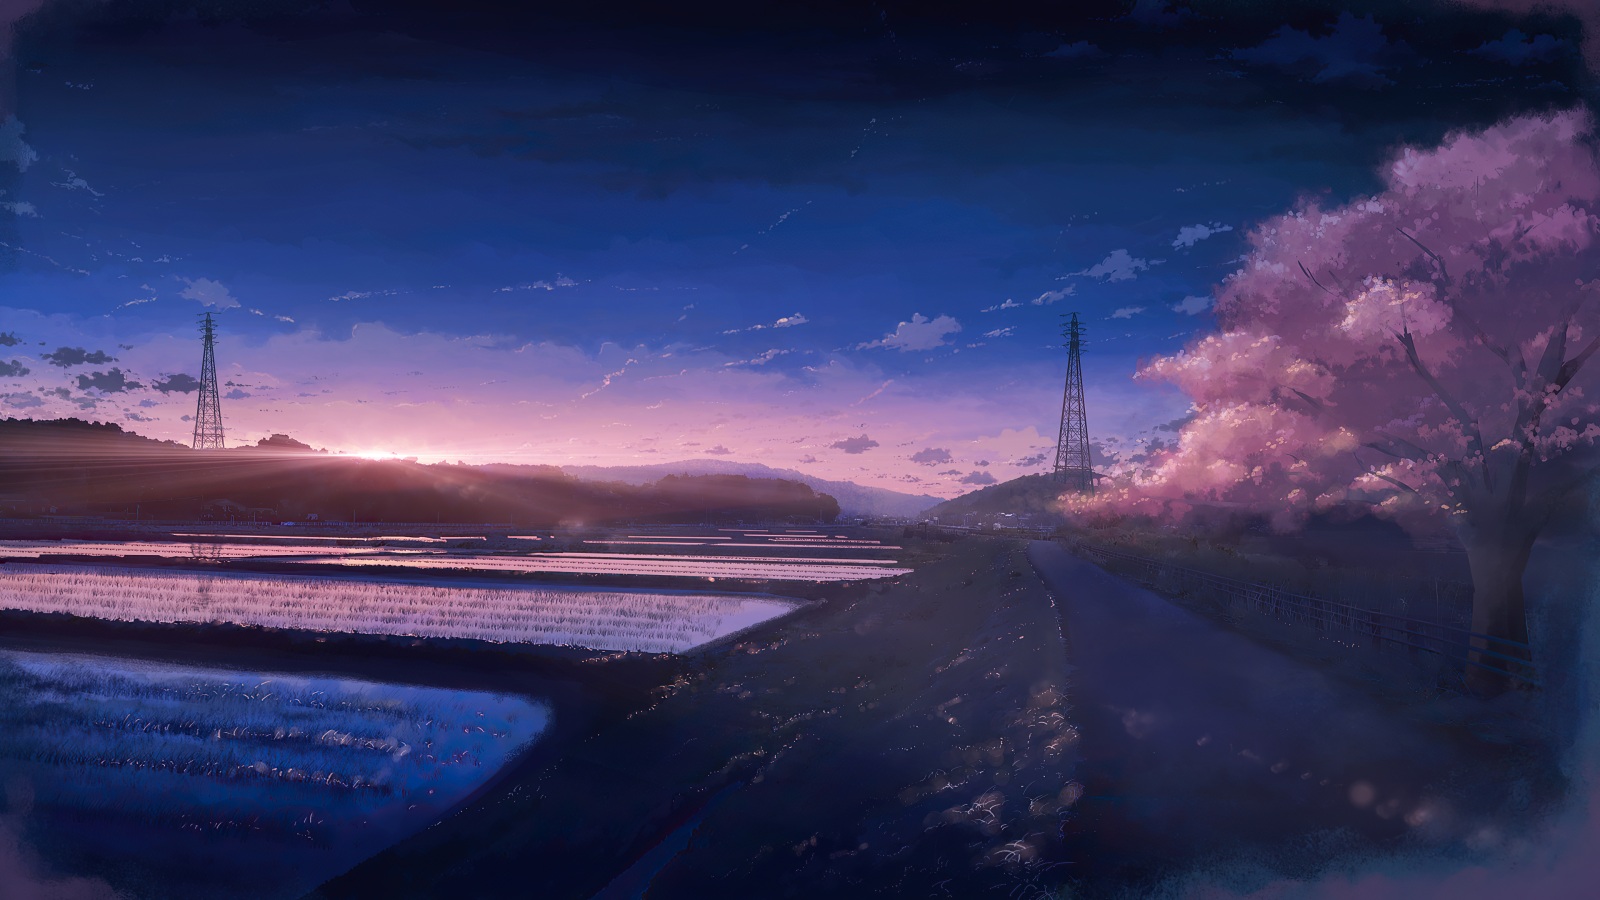 Cảnh đồng hoa rộng lớn và tuyệt đẹp trên bức hình nền Anime Scenery Field sẽ khiến cho bạn cảm thấy hoàn toàn thư giãn. Khám phá cuộc phiêu lưu trong một thế giới trong sáng với bức hình nền này.